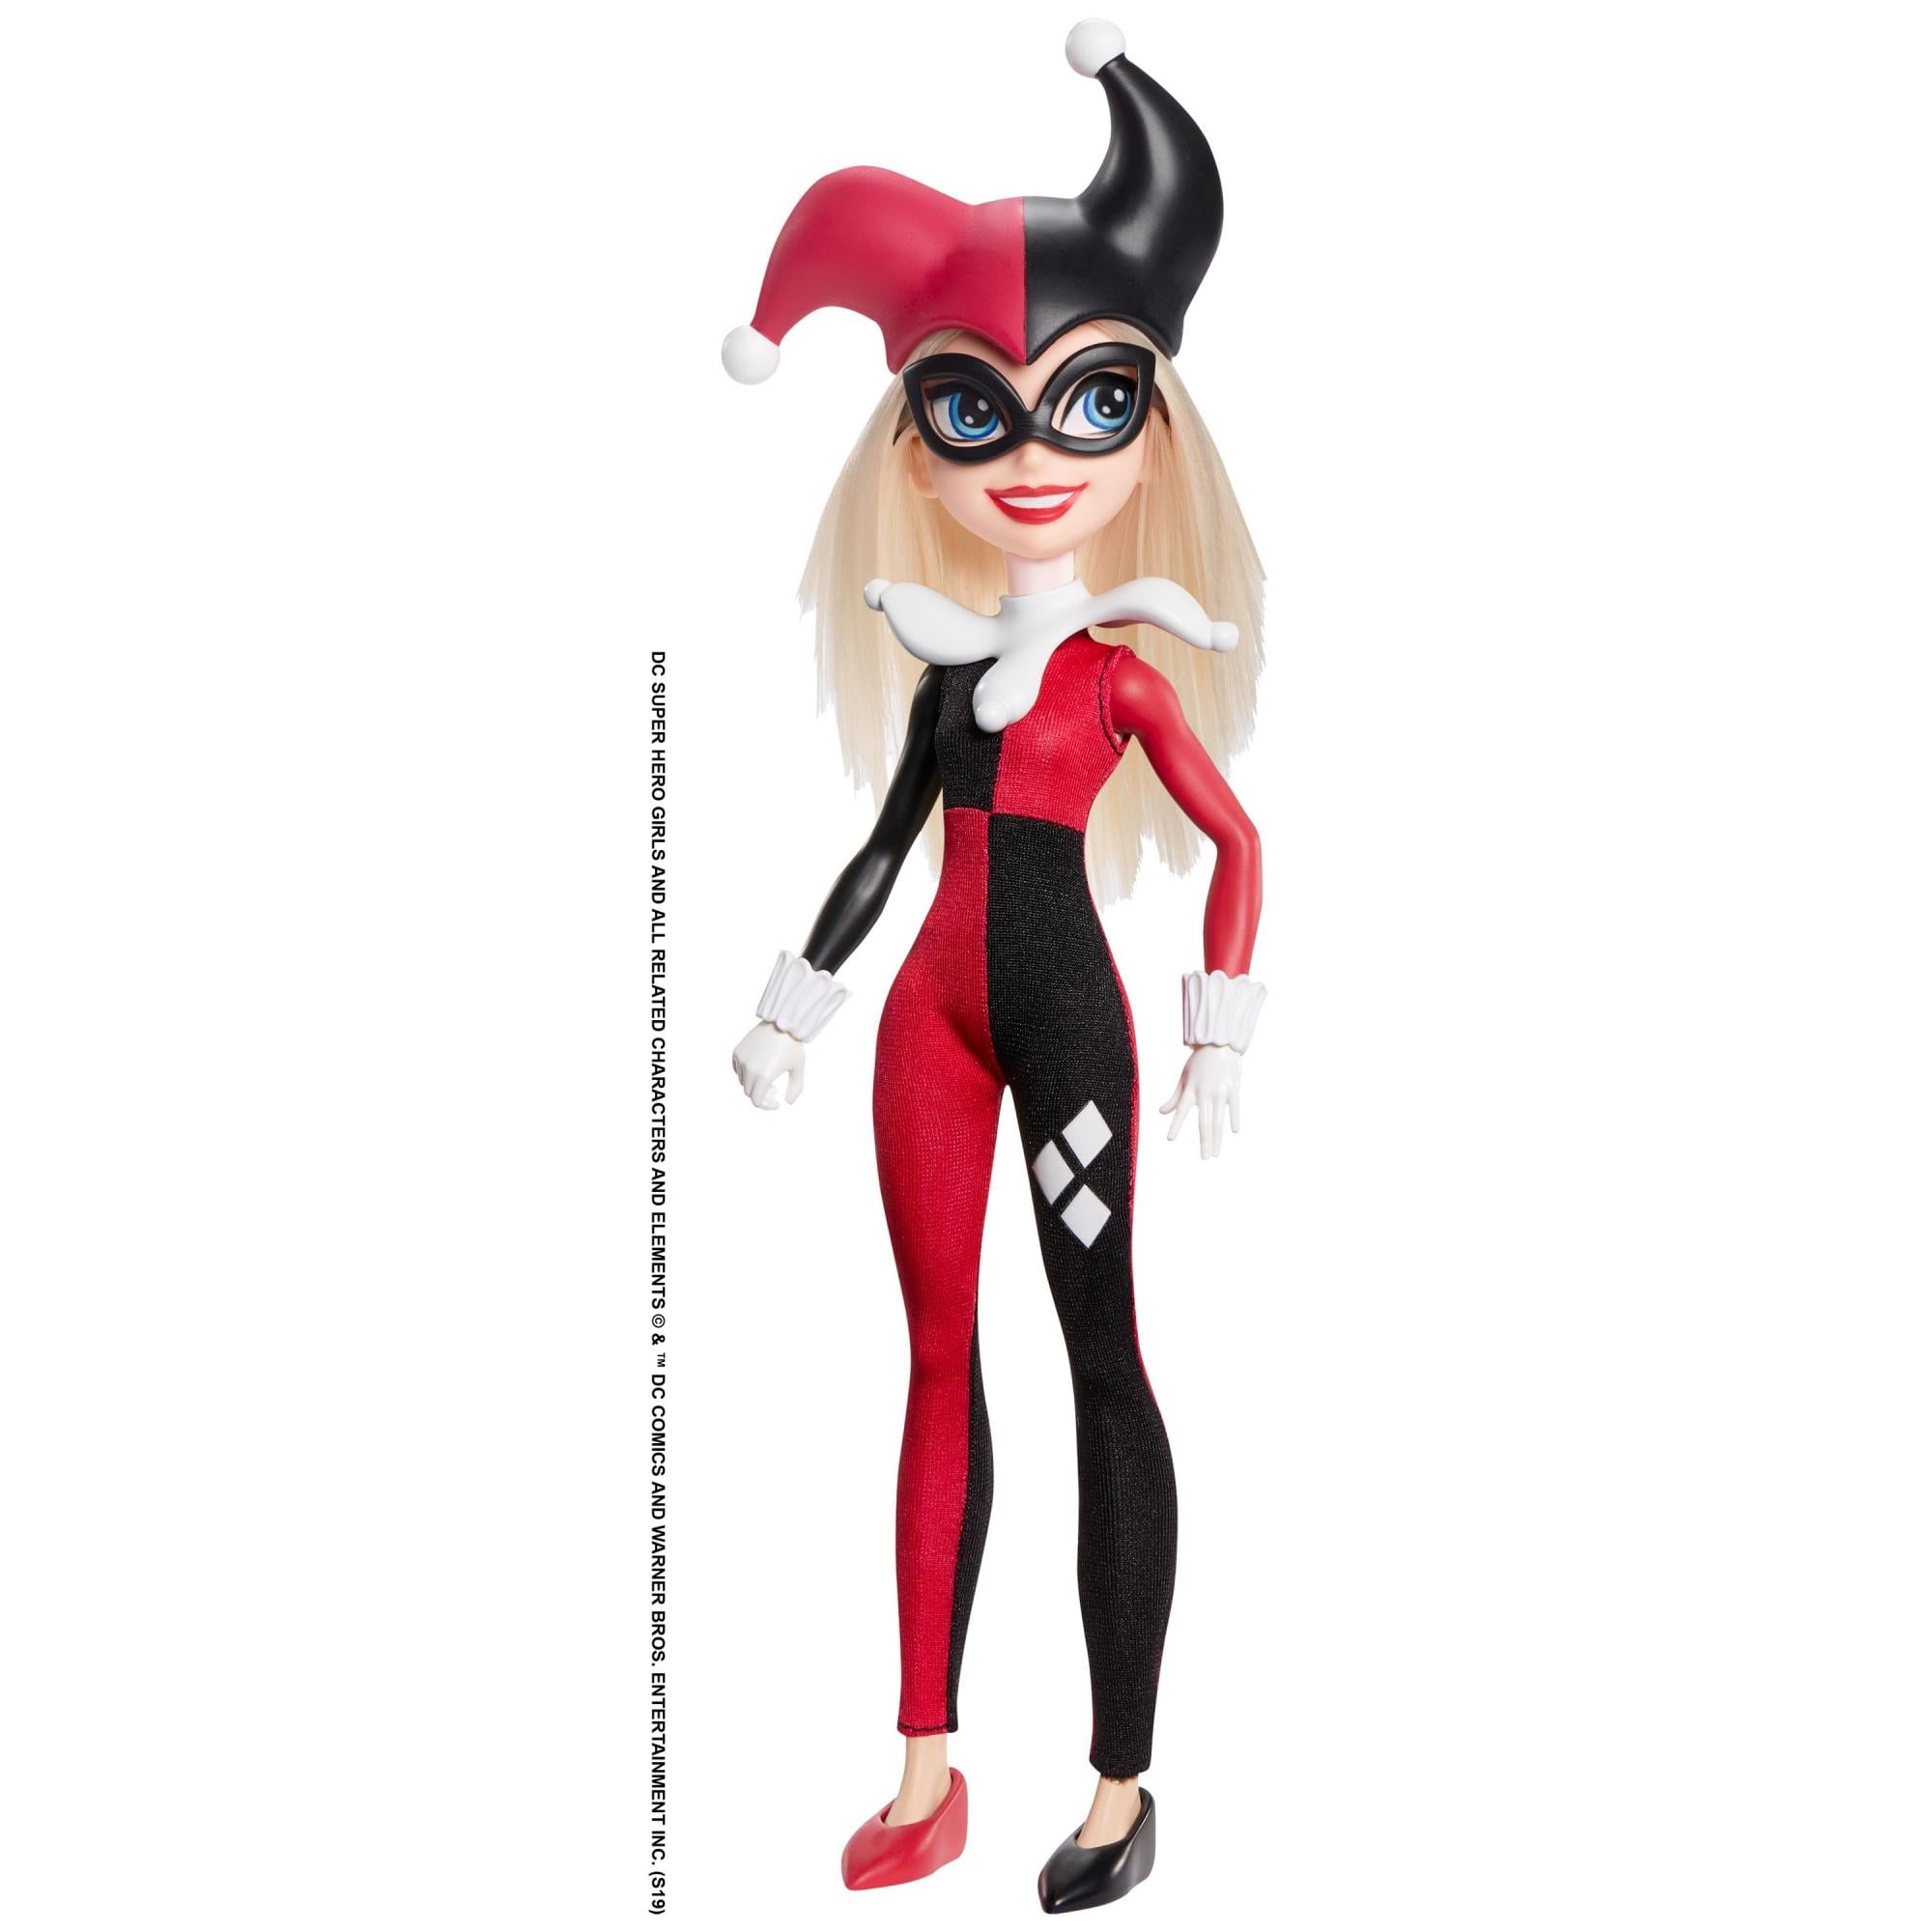 DC Super Hero Girls Harley Quinn Figure Doll Toys Cpyrt 2016 FCC70 Mattel 188712 for sale online 